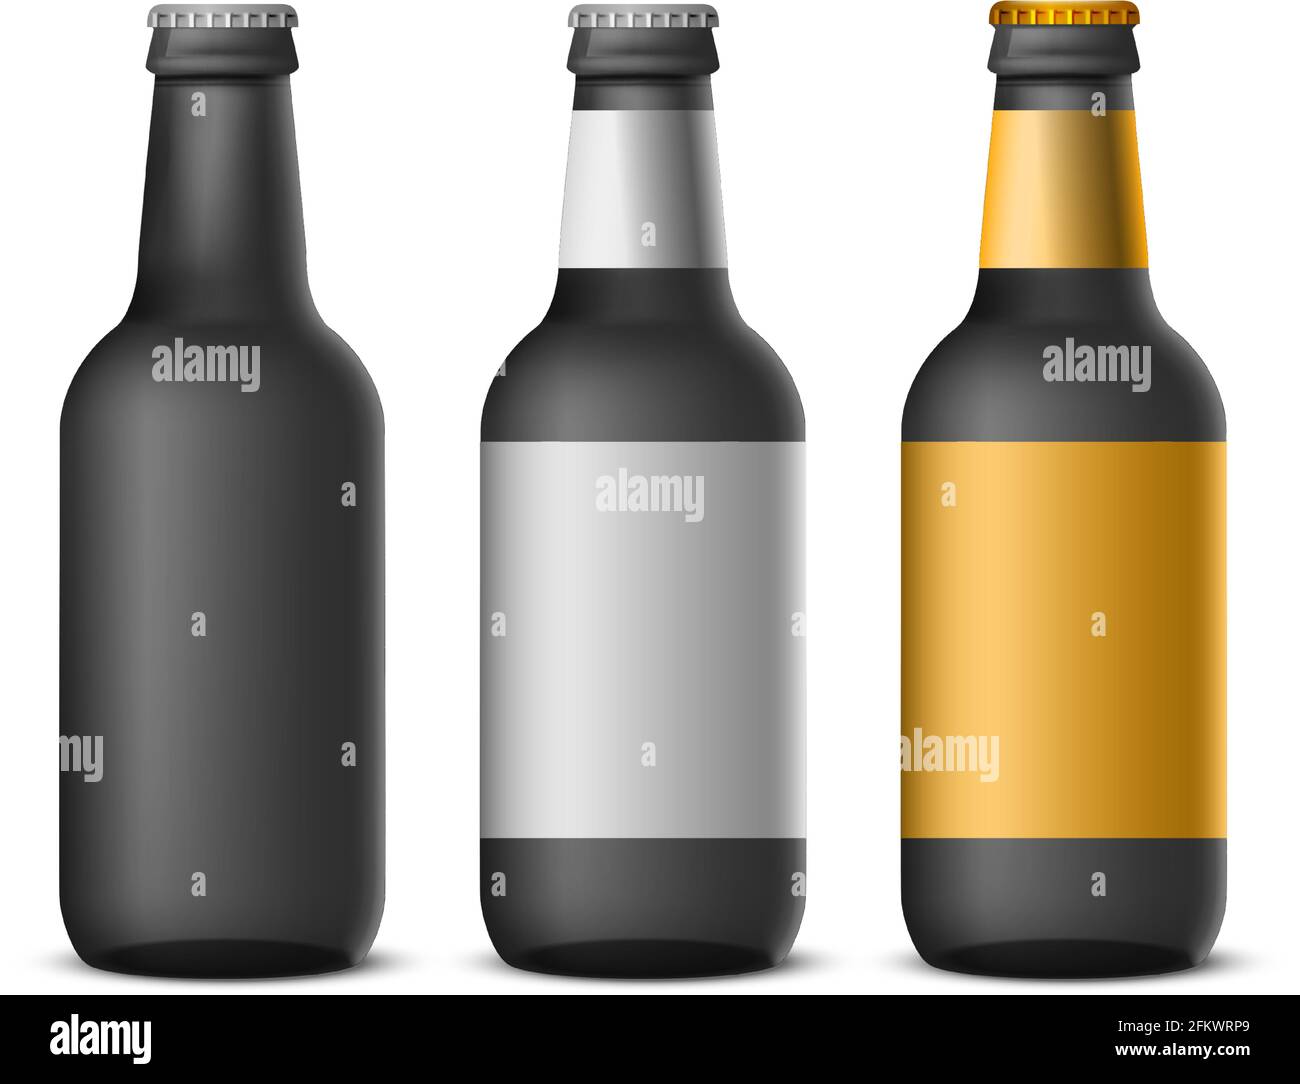 Bierflaschen etiketten Stock-Vektorgrafiken kaufen - Alamy